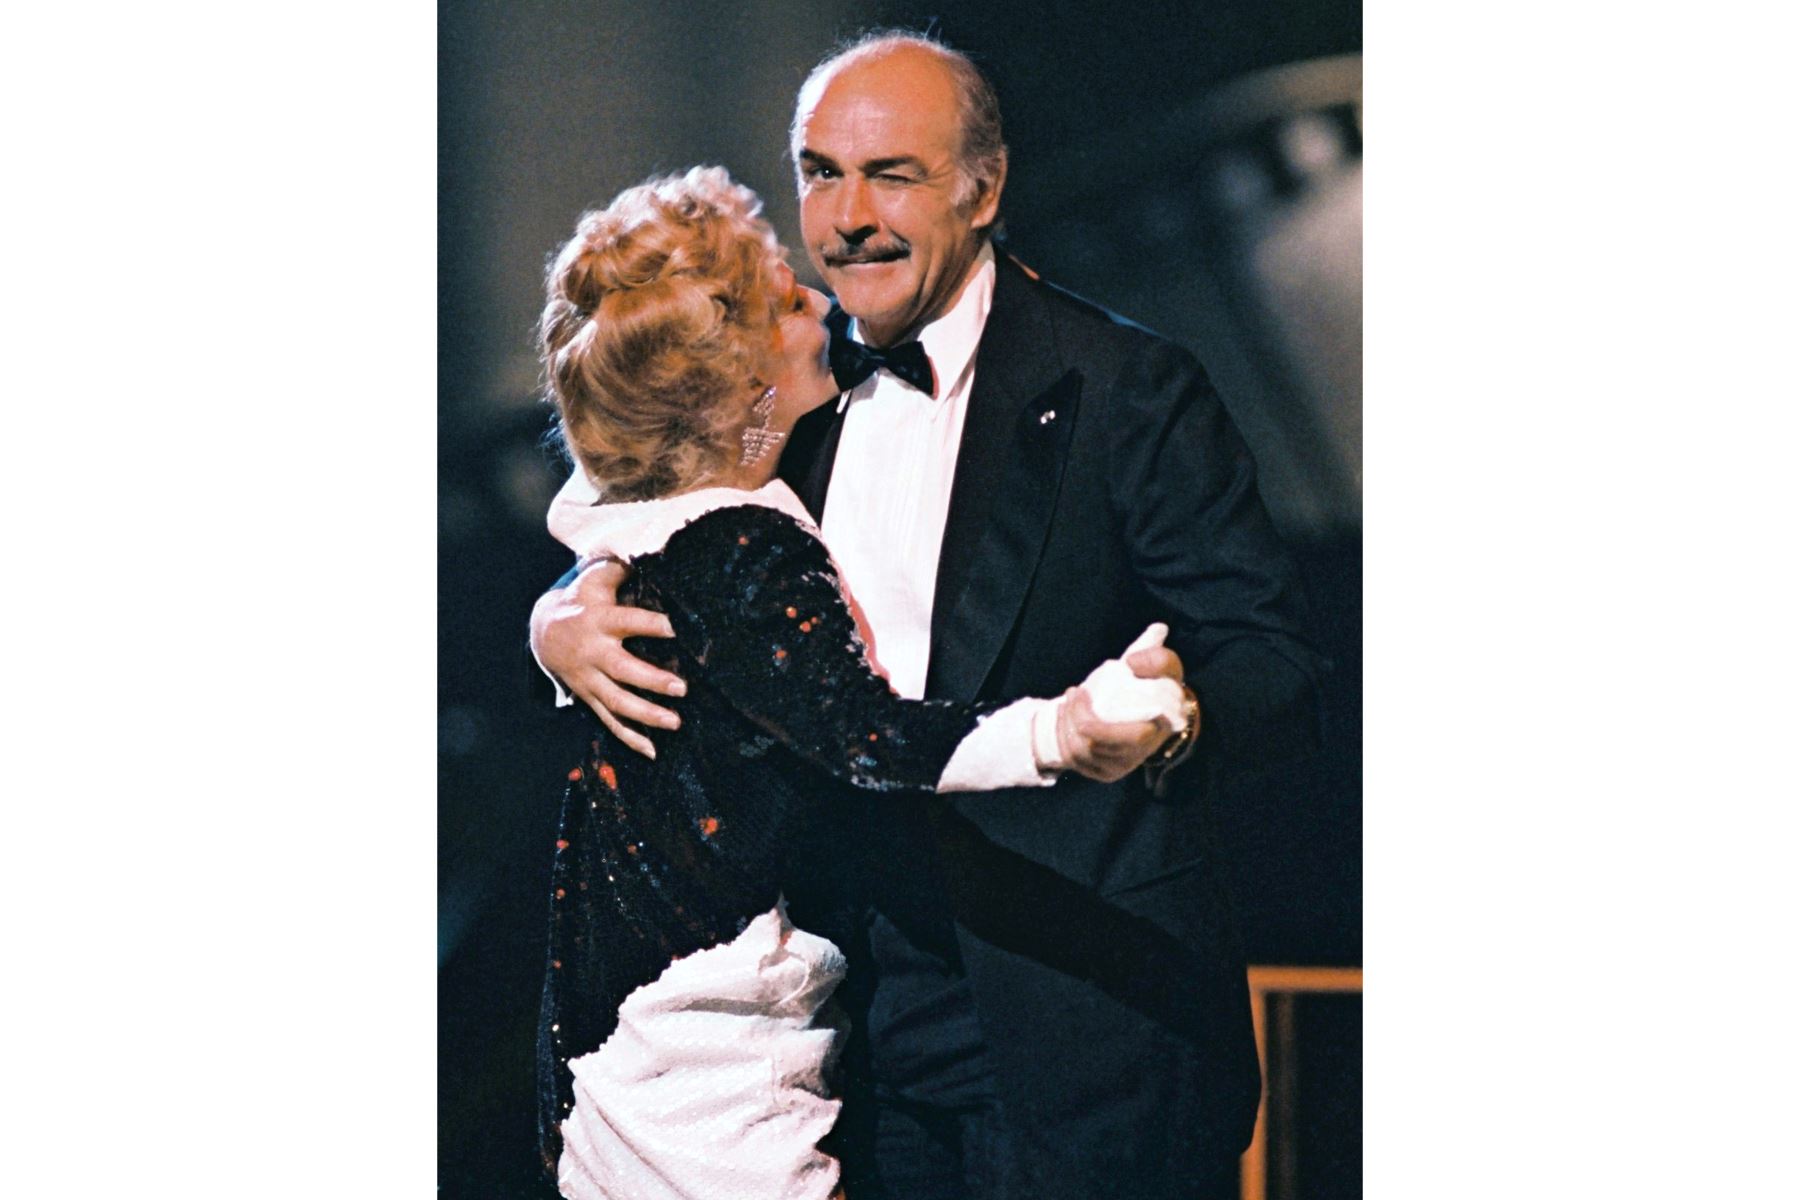 El actor escocés Sean Connery guiña un ojo al fotógrafo mientras baila junto a la actriz francesa Jeanne Moreau, el 07 de marzo de 1987, durante la ceremonia anual de premios de la industria cinematográfica francesa, en París. Foto: AFP